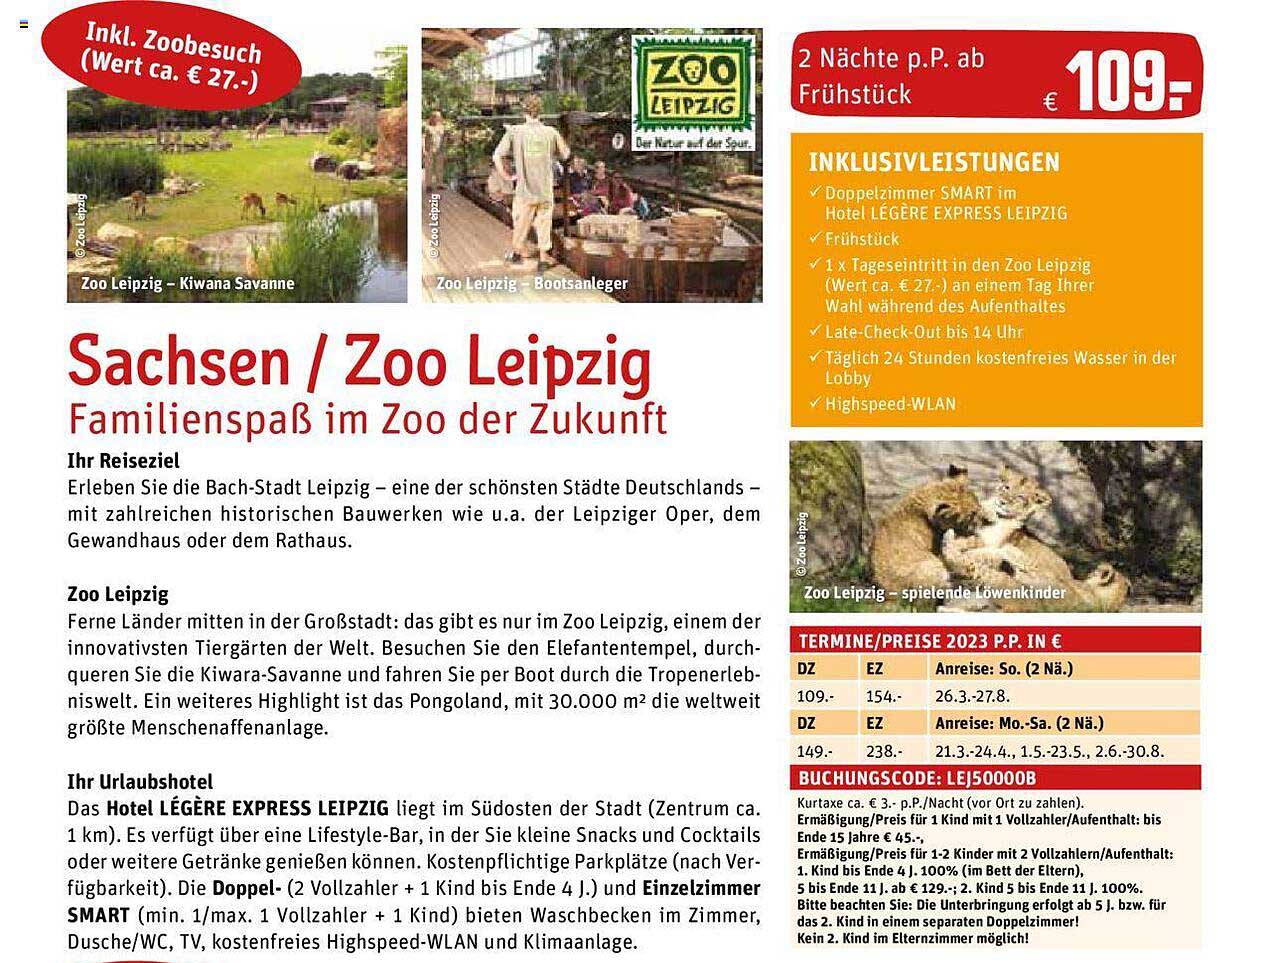 REWE Reisen Sachsen - Zoo Leipzig